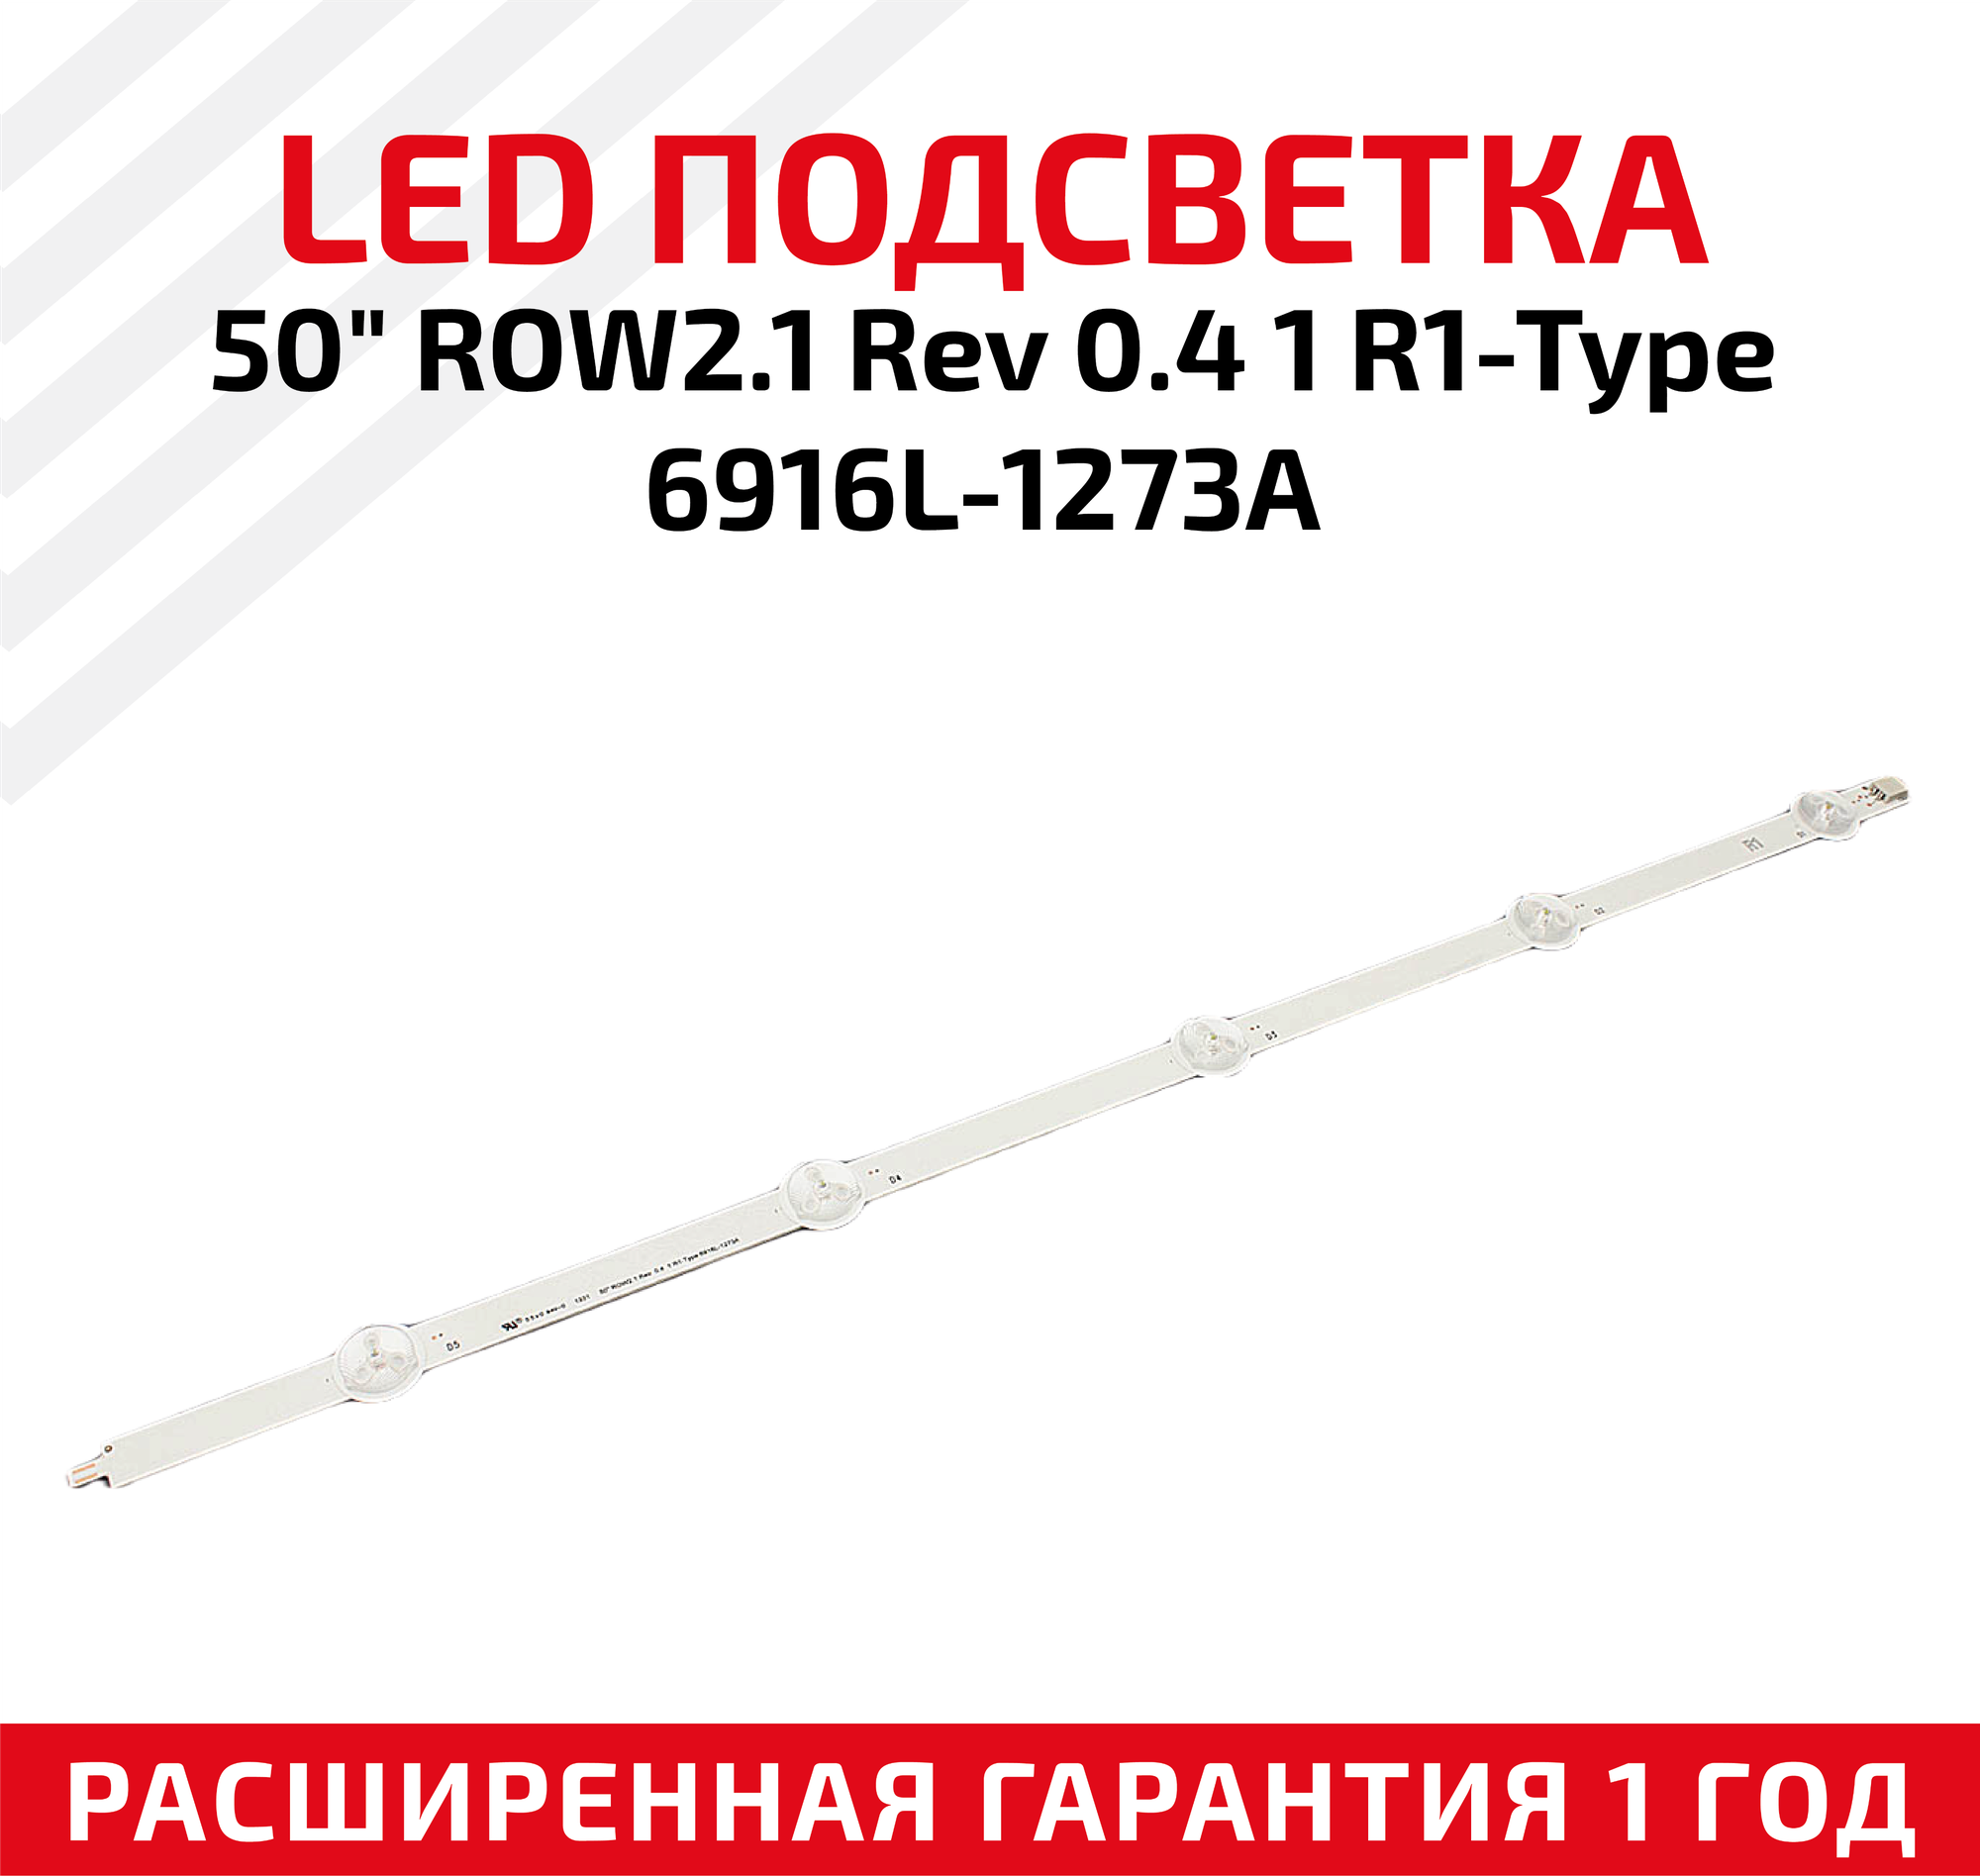 LED подсветка (светодиодная планка) для телевизора 50" ROW2.1 Rev 0.4 1 R1-Type 6916L-1273A